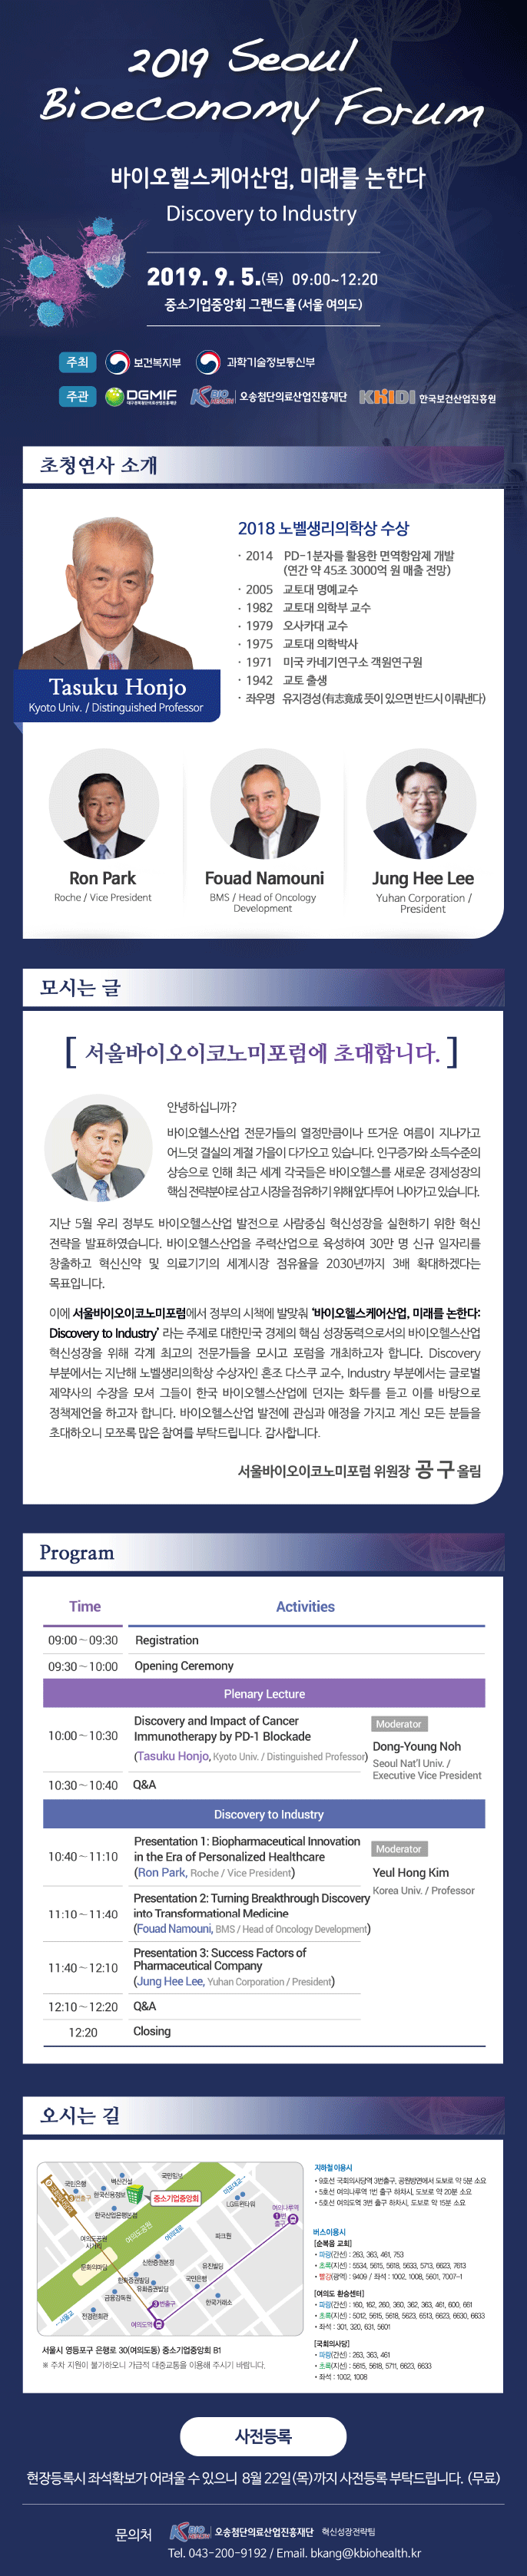 서울바이오이코노미포럼 개최 이미지입니다. 자세한 내용은 아래 글을 참고해주세요.